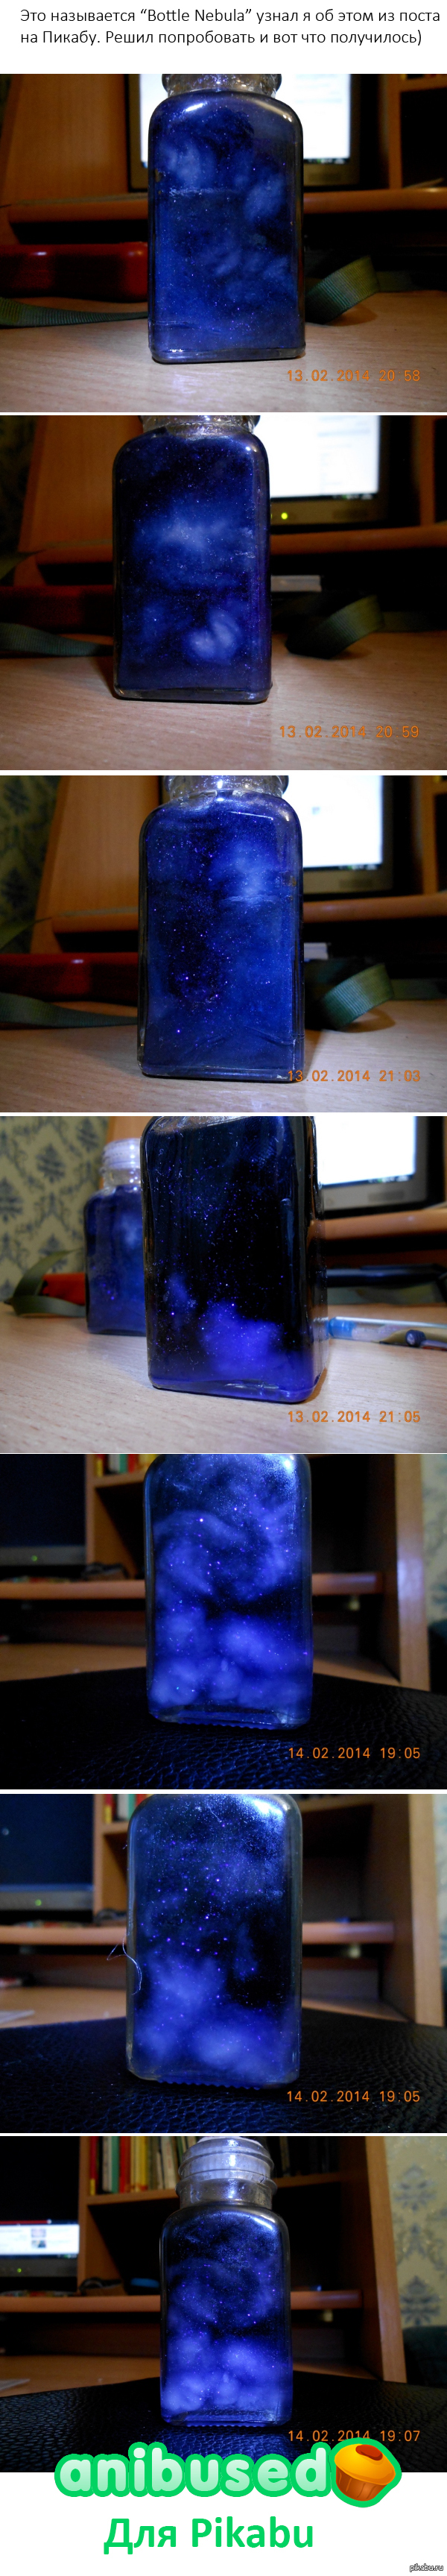     Bottle Nebula <a href="http://pikabu.ru/story/smozhet_pomoch_pikabu__1839955">http://pikabu.ru/story/_1839955</a>  , )     ,           .